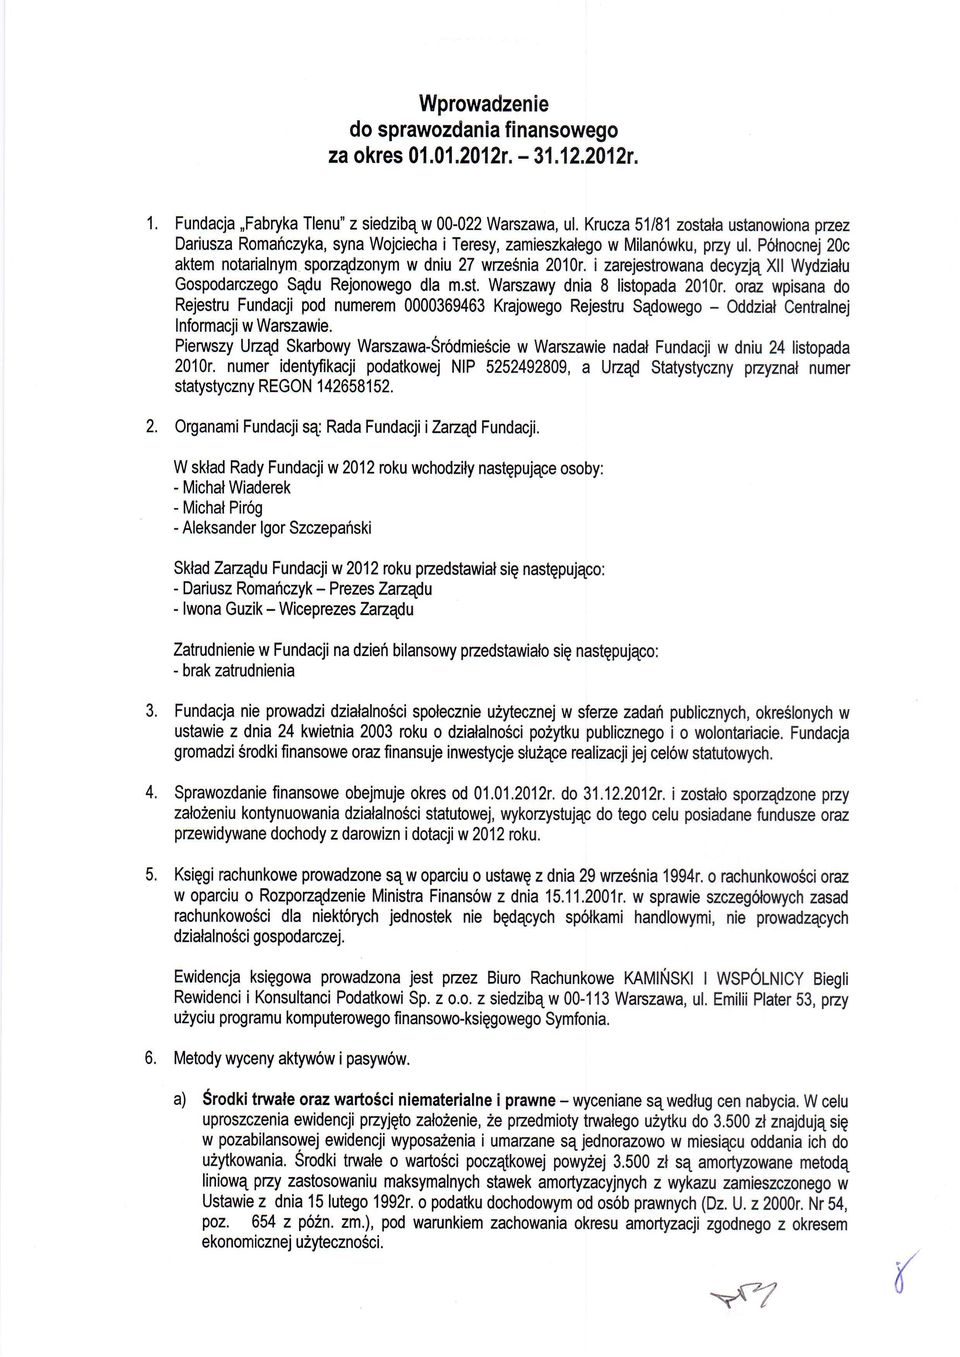 i zarejestrowana decyzjq Xll Wydzialu Gospodarczego Sqdu Rejonowego dla m.st. Warszawy dnia 8 listopada 2010r.